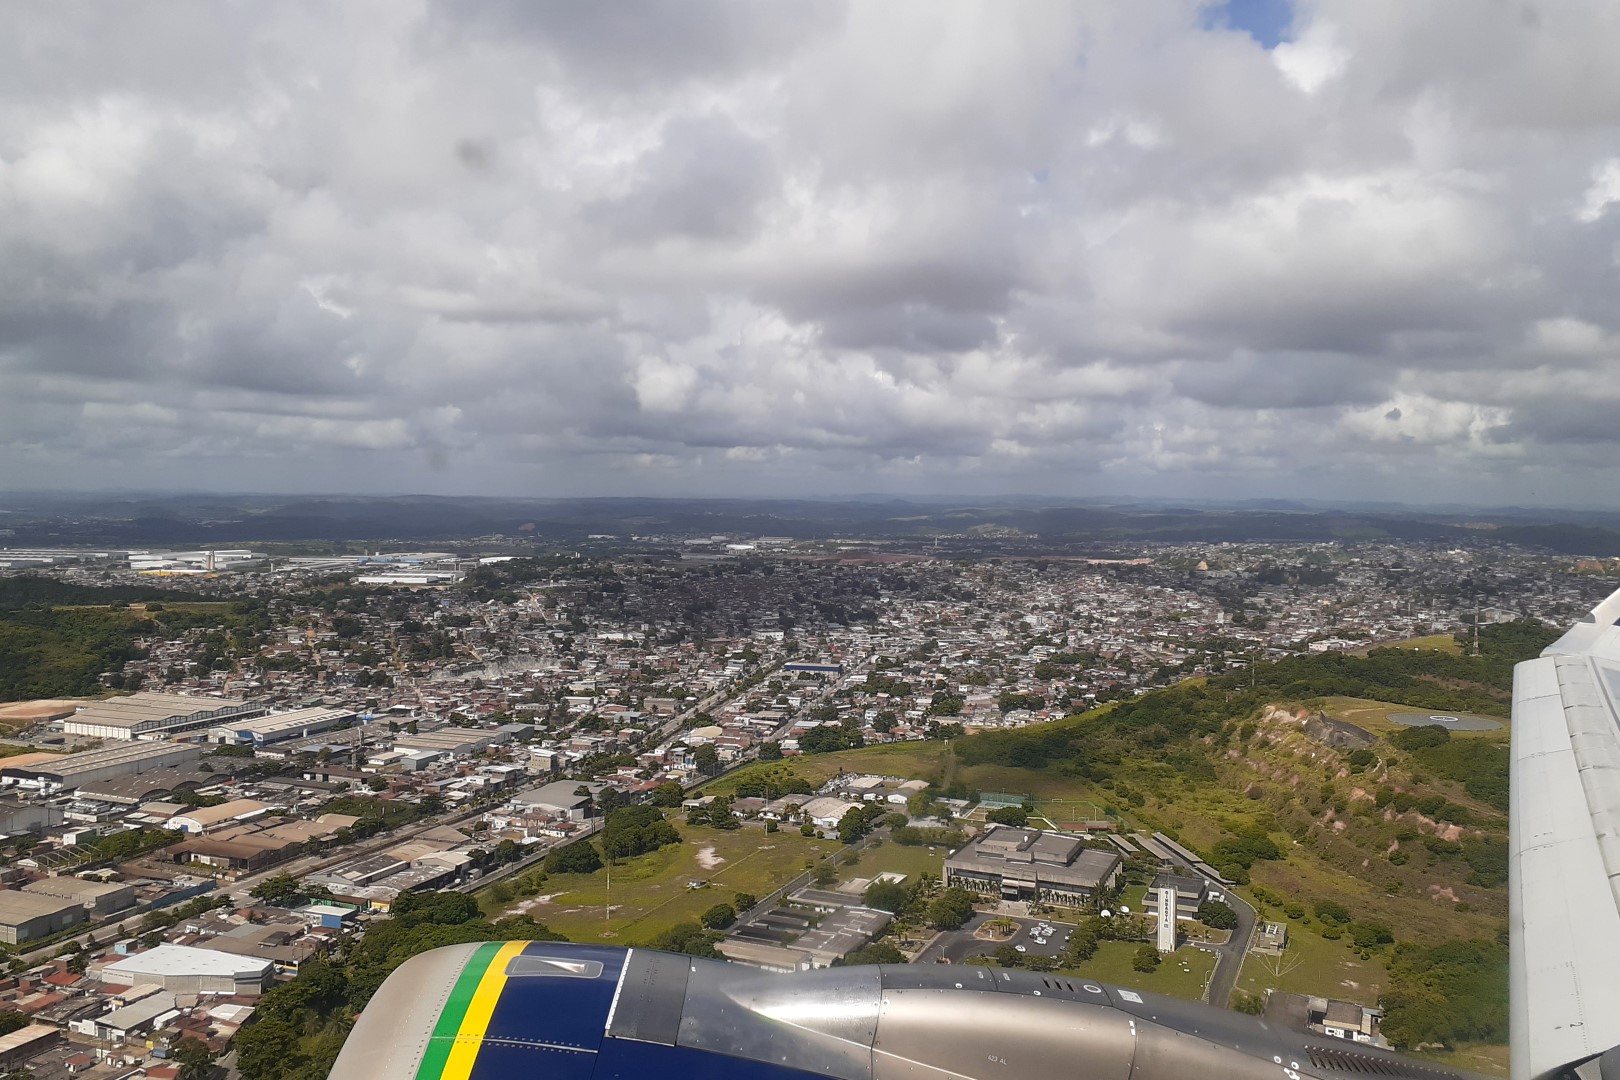 Flight 5024 REC - SDU, flying above Boa Viagem and Recife